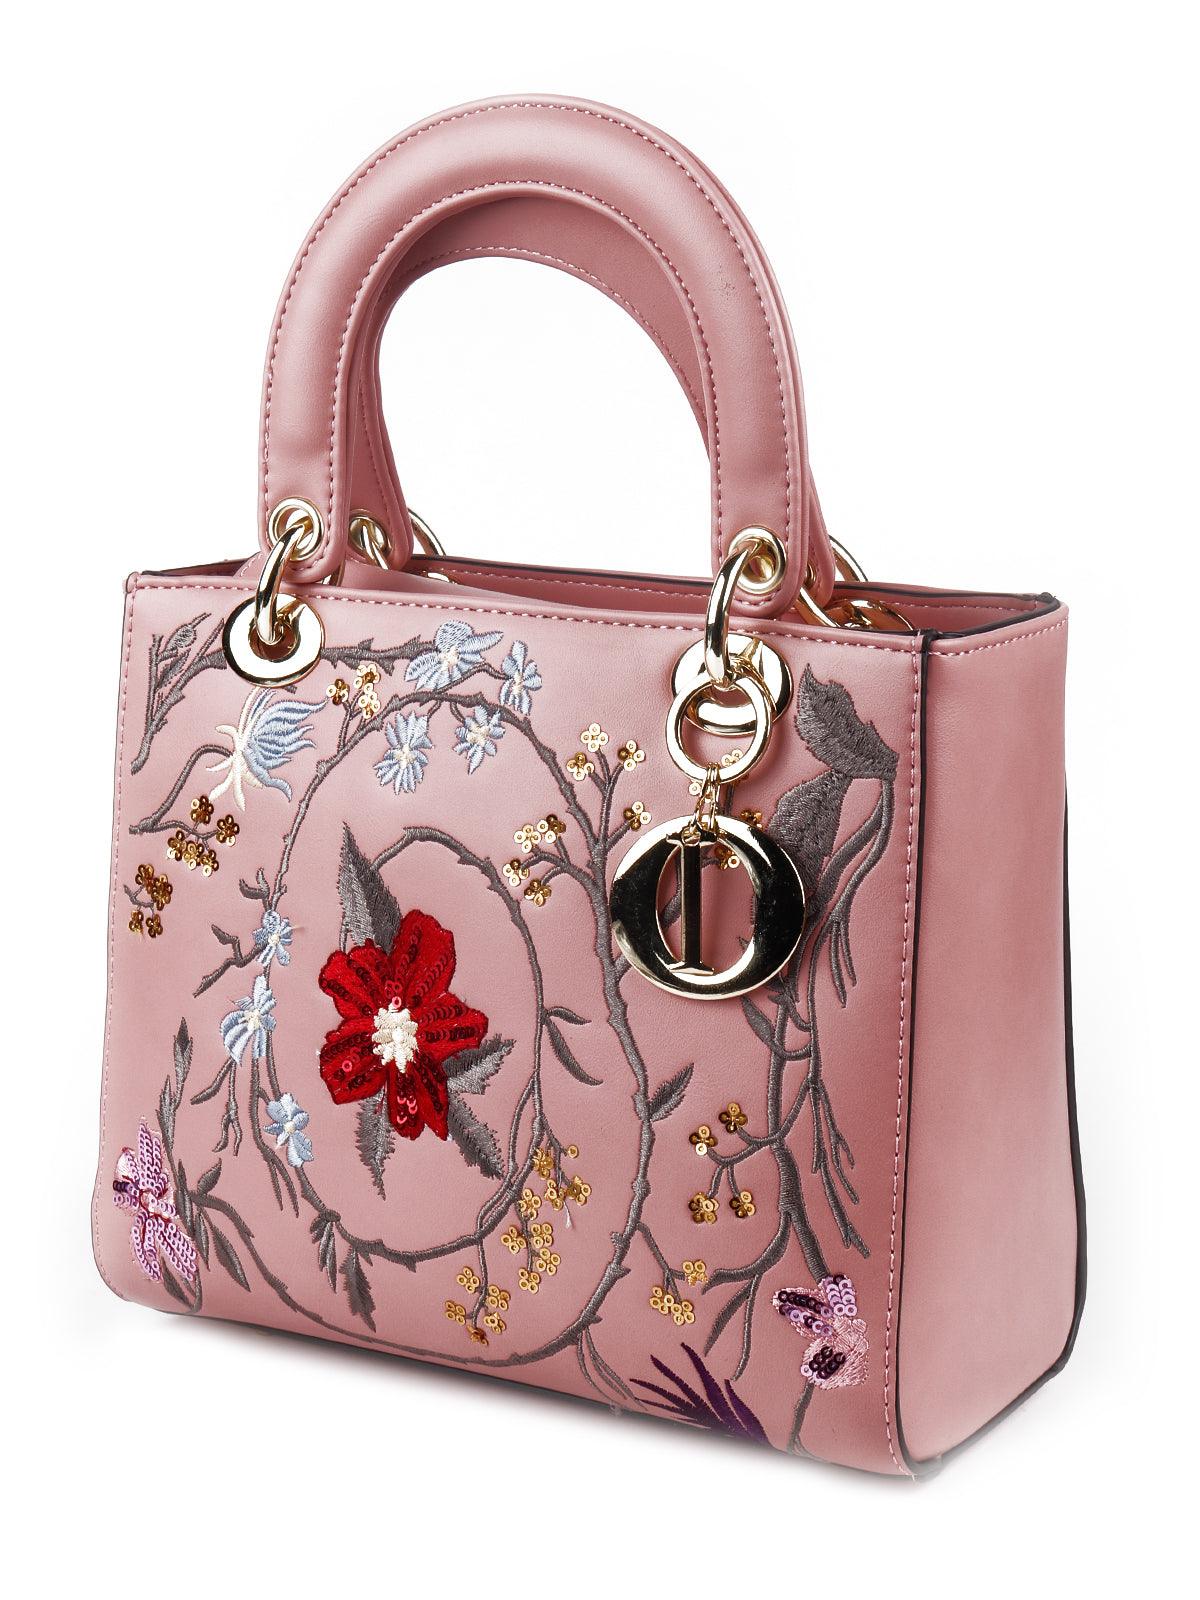 Blush pink floral satchel bag for women - Odette